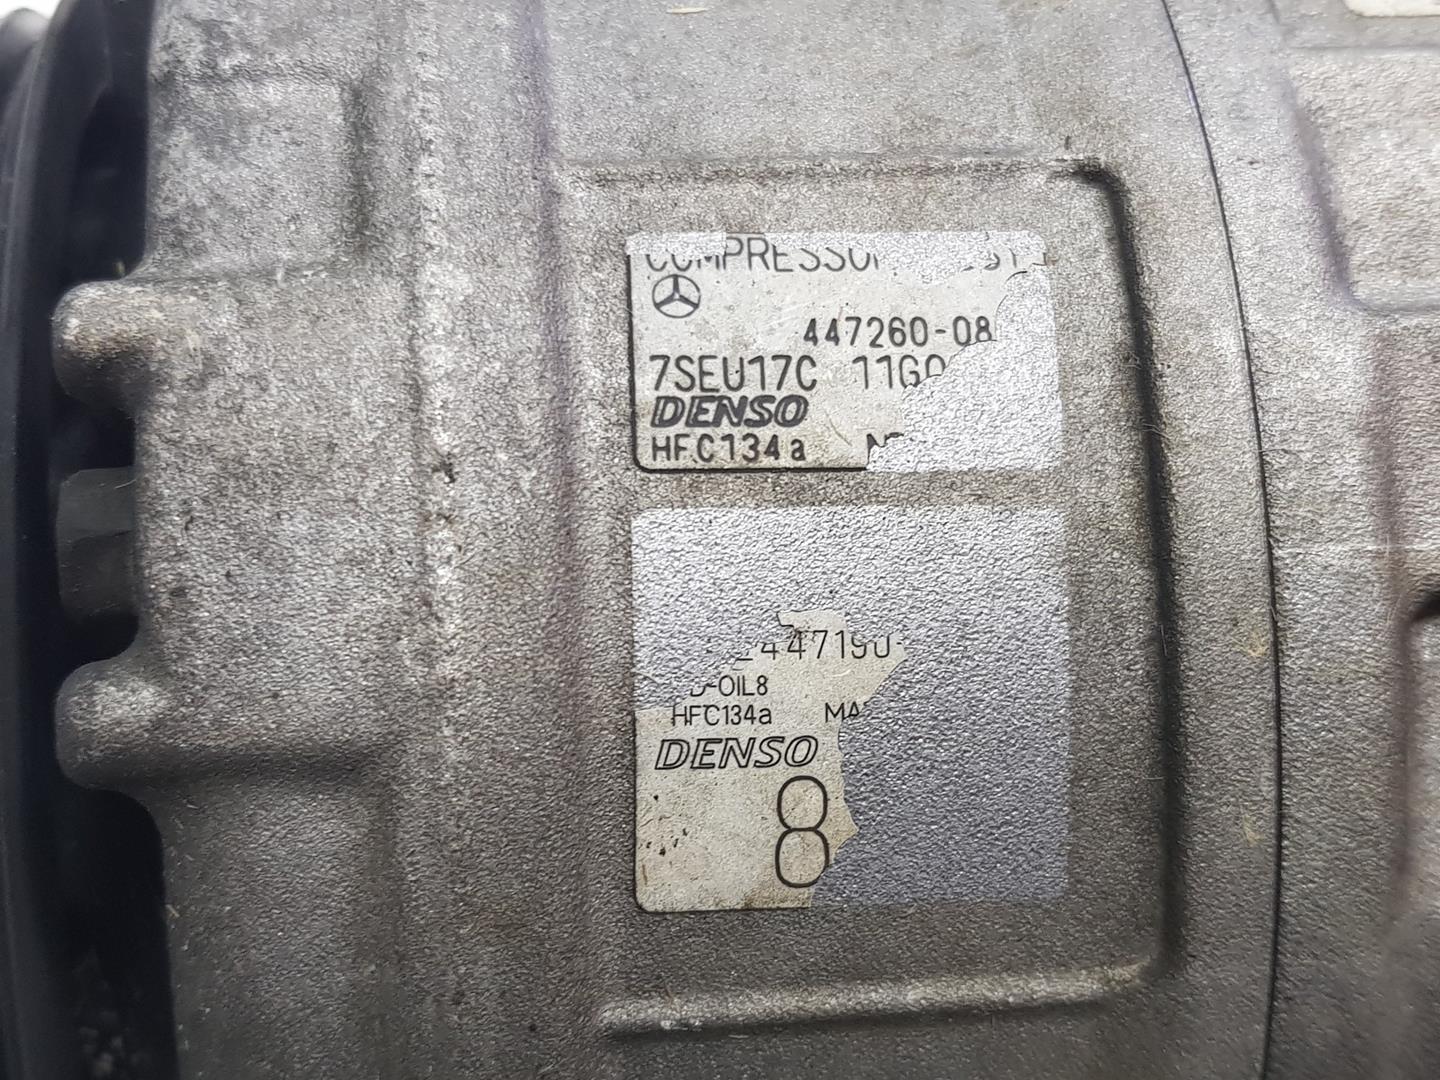 MERCEDES-BENZ M-Class W164 (2005-2011) Hасос кондиционера 7SEU17C, A0012308311 24251314